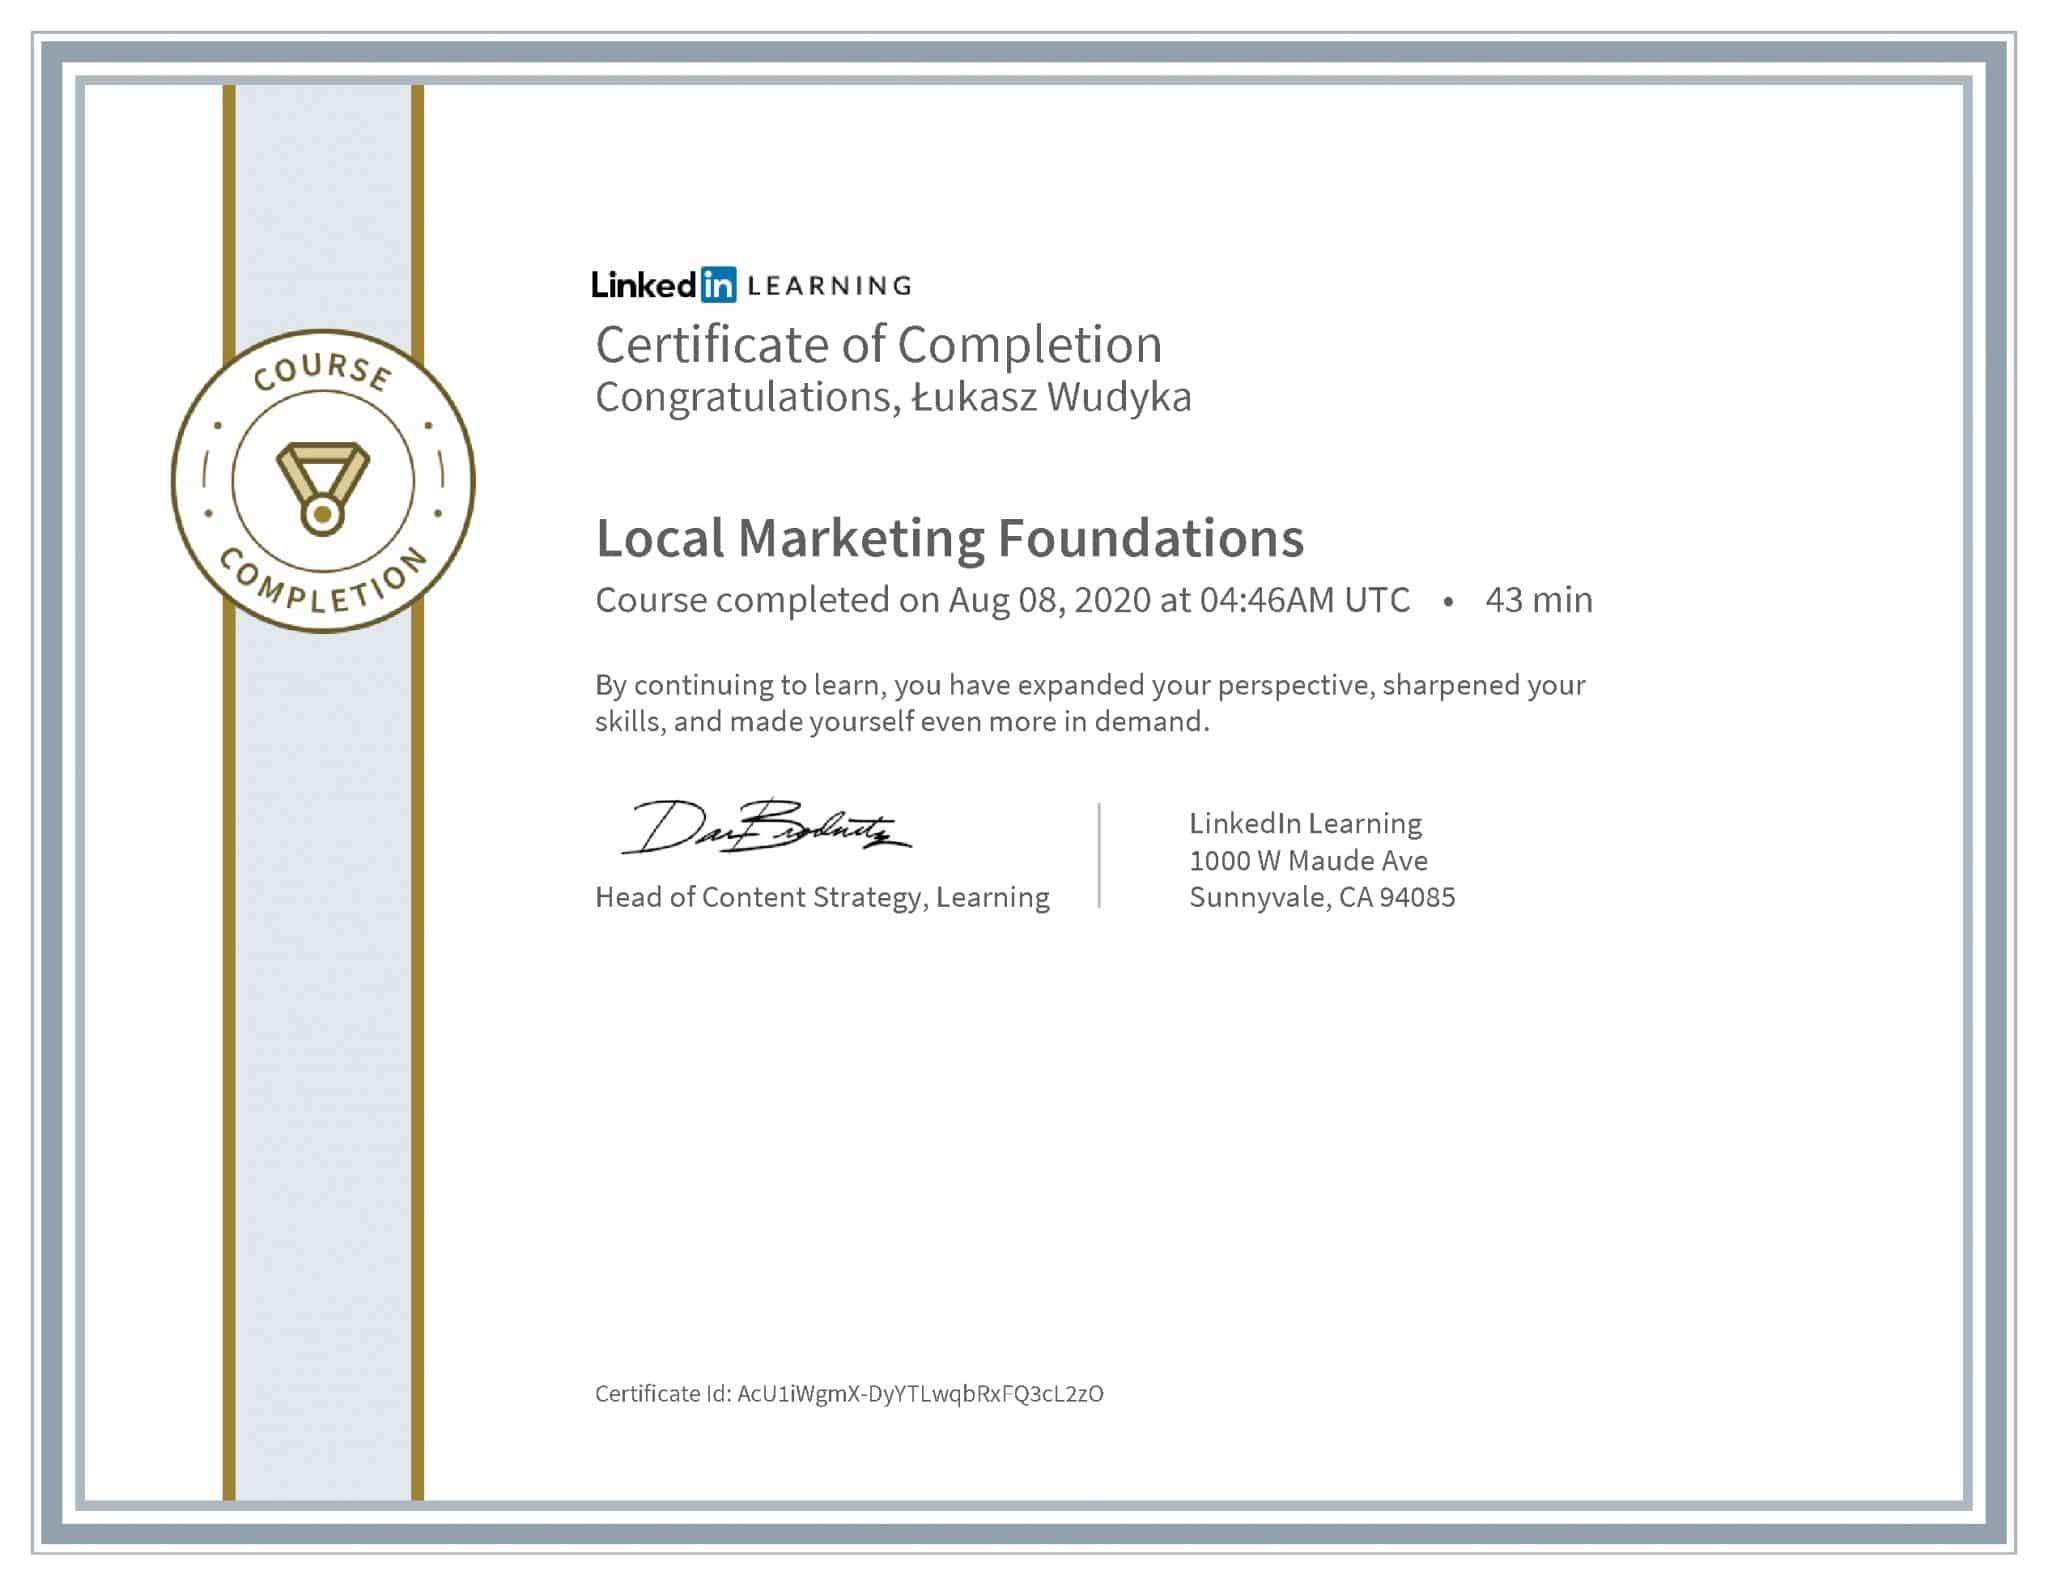 Łukasz Wudyka certyfikat LinkedIn Local Marketing Foundations